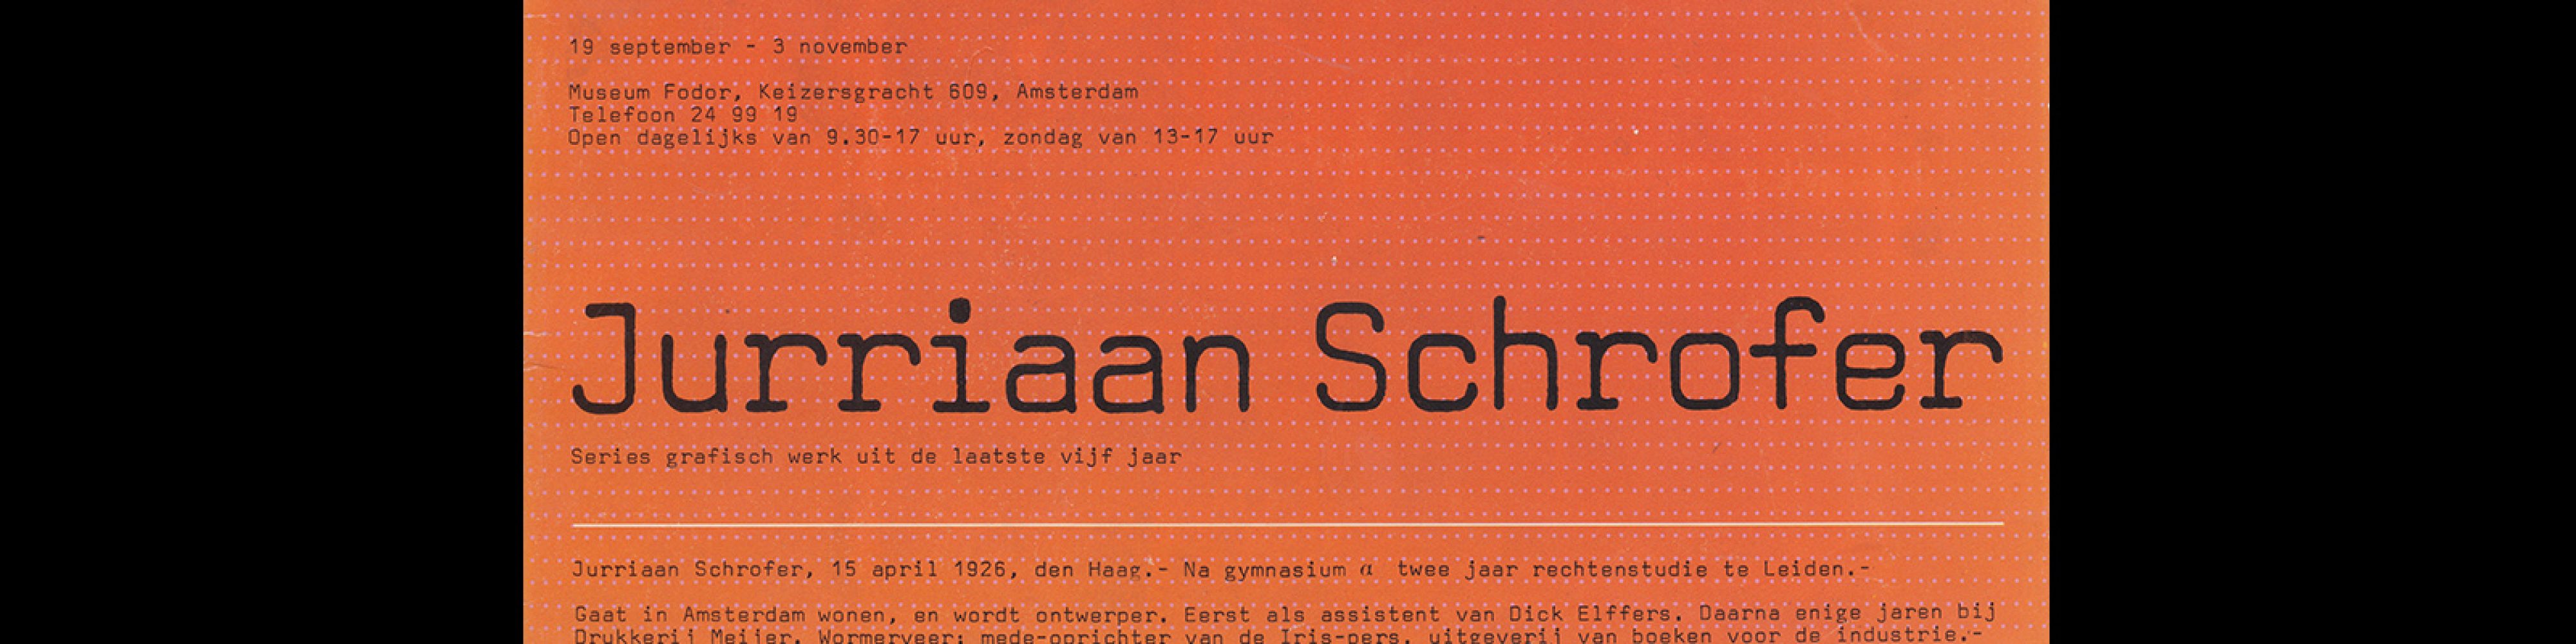 Fodor 22, 1974 - Jurriaan Schrofer. Designed by Wim Crouwel and Daphne Duijvelshoff (Total Design)